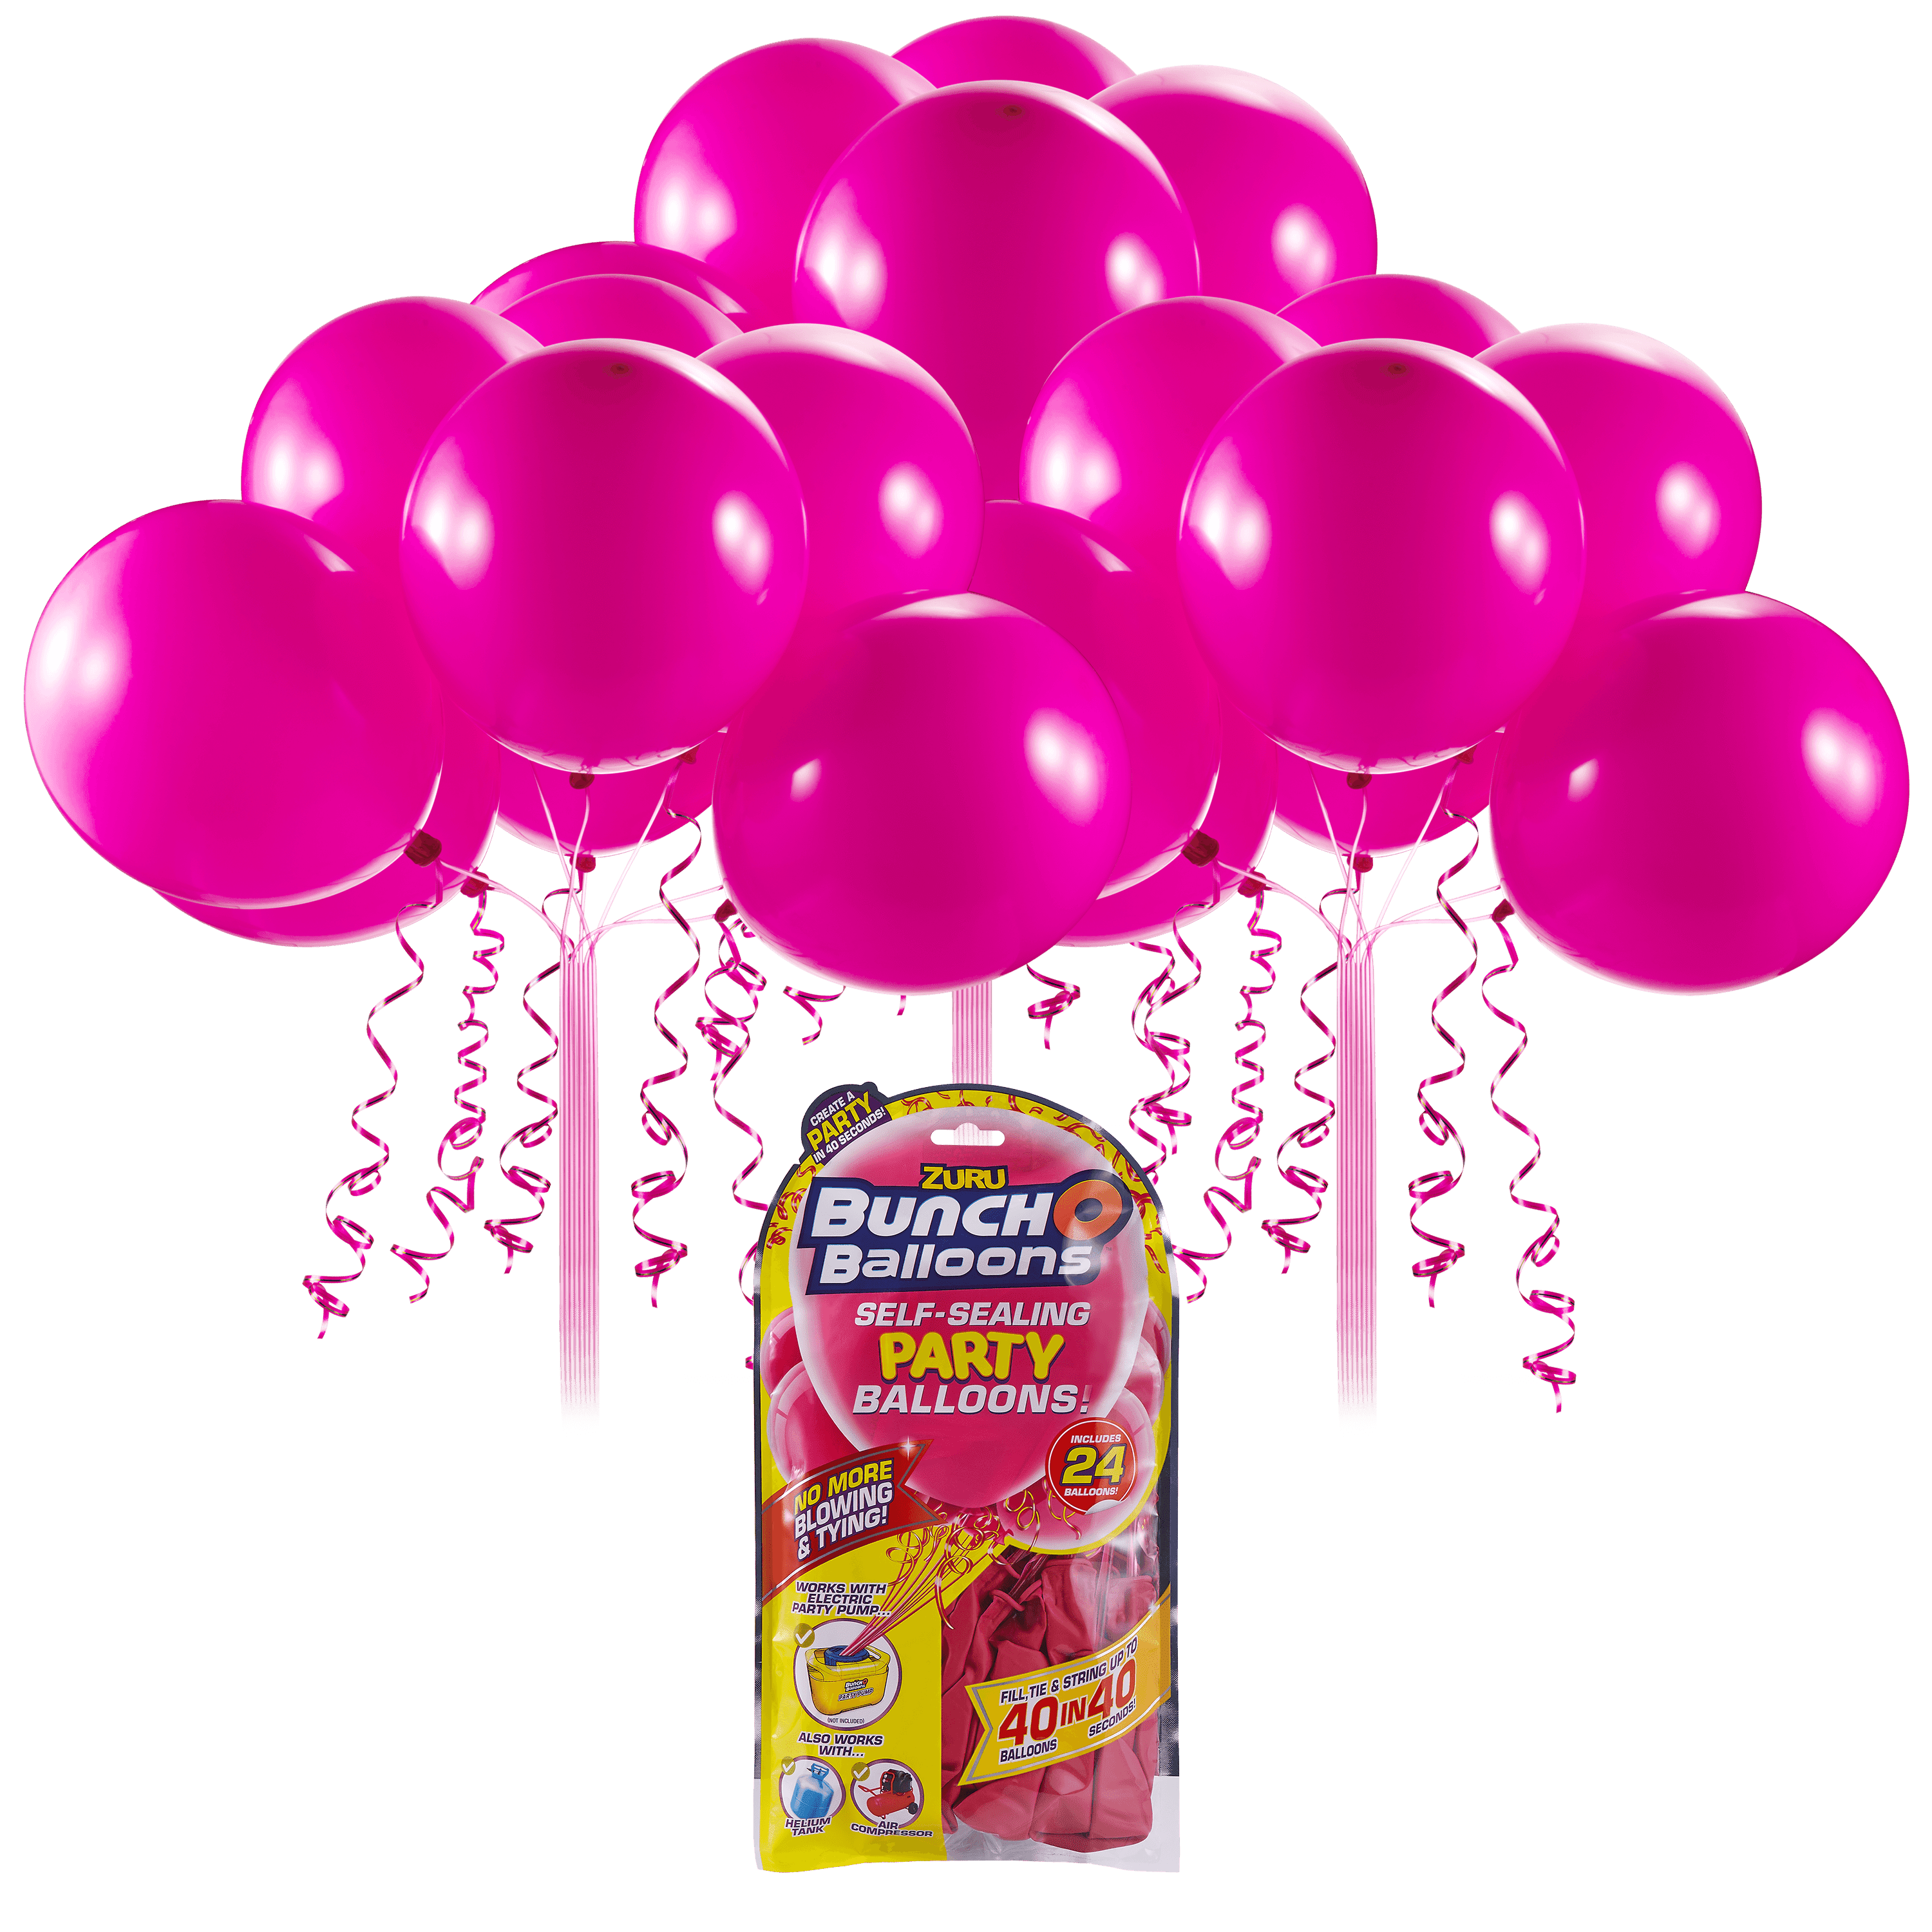 O Balloons